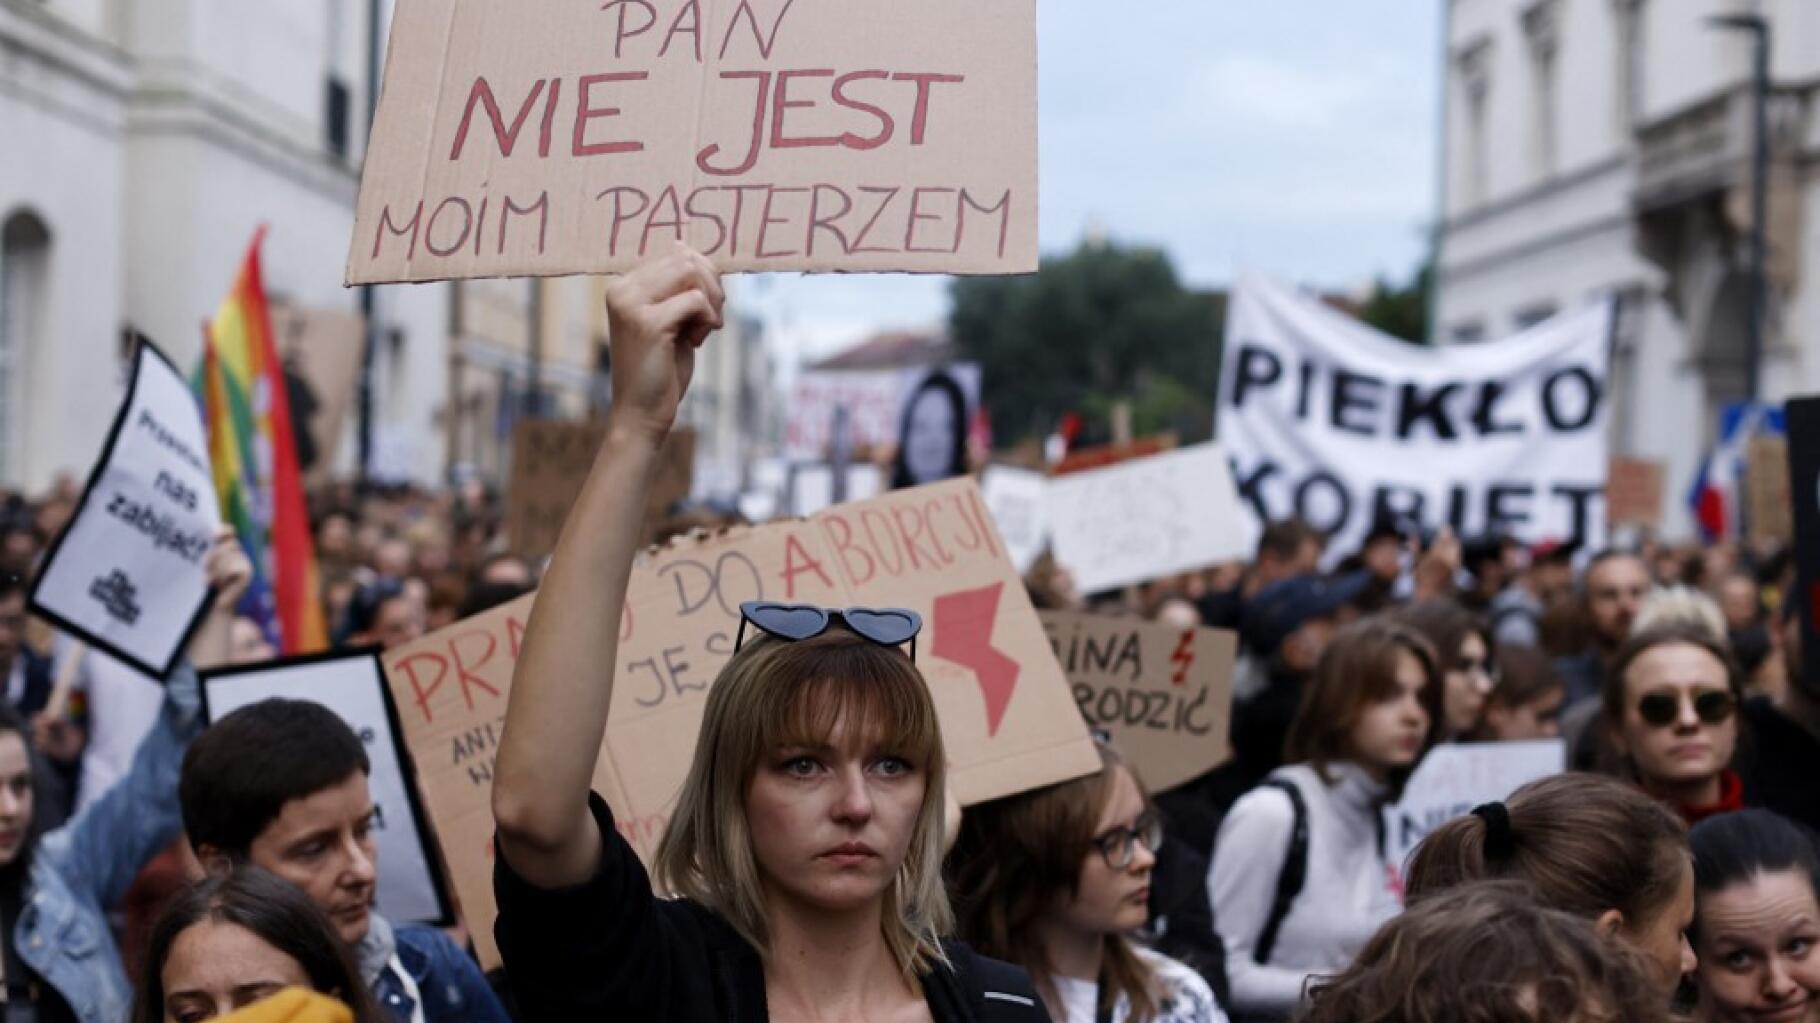 W Polsce wycofanie prawa do aborcji jest już dawno oczekiwane